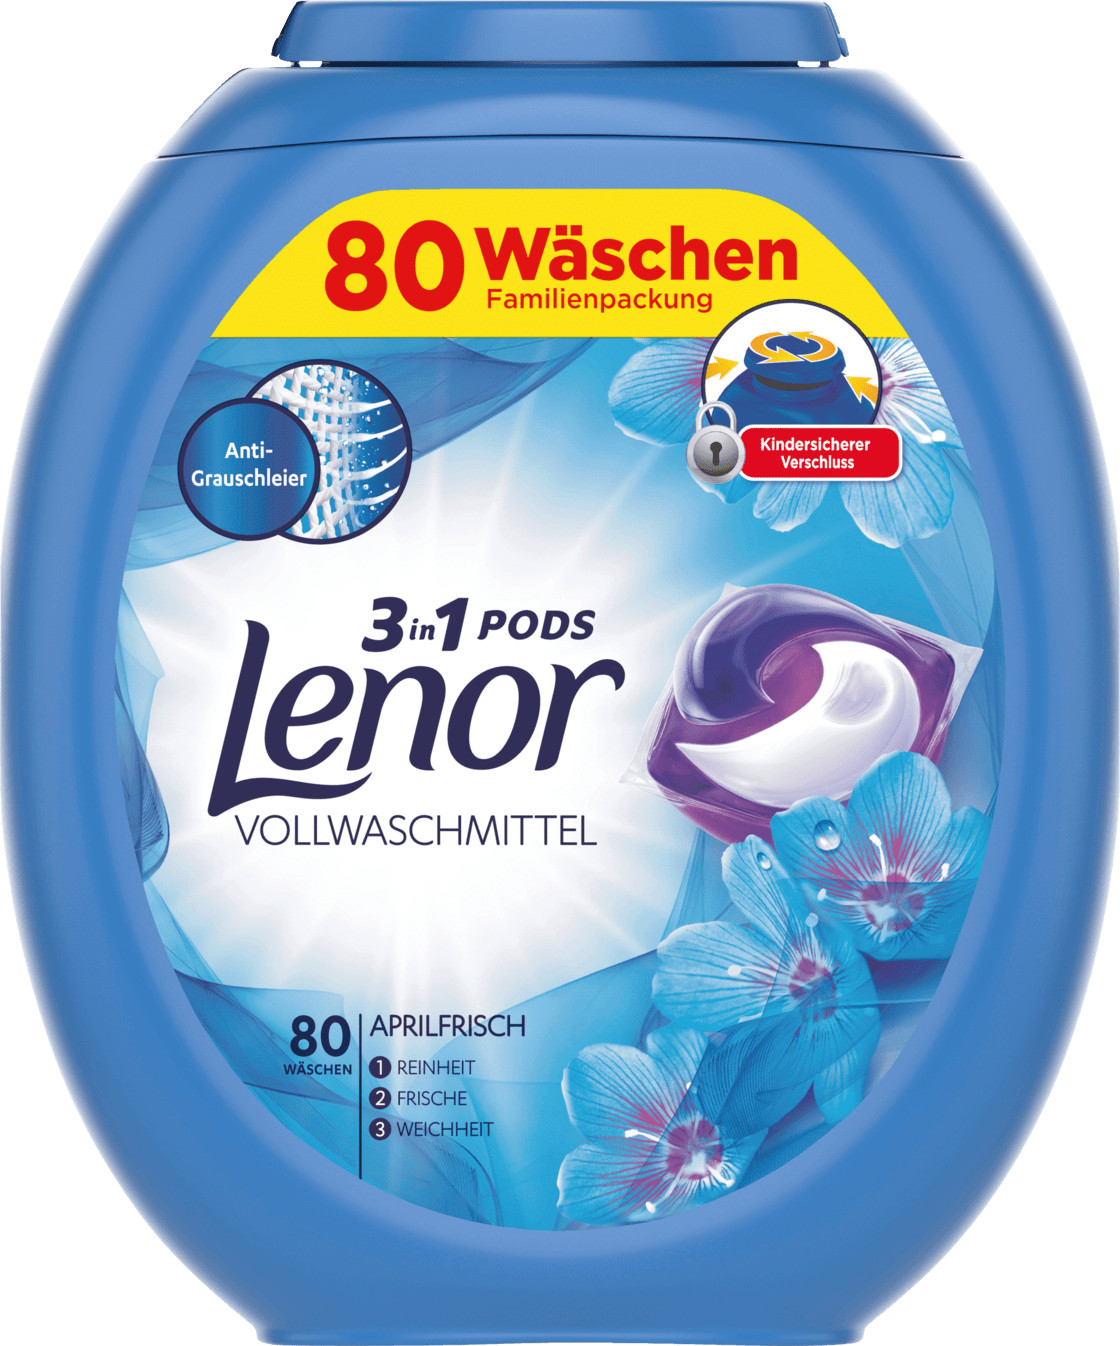 Lenor 3in1 Pods Vollwaschmittel Aprilfrisch (80 WL)